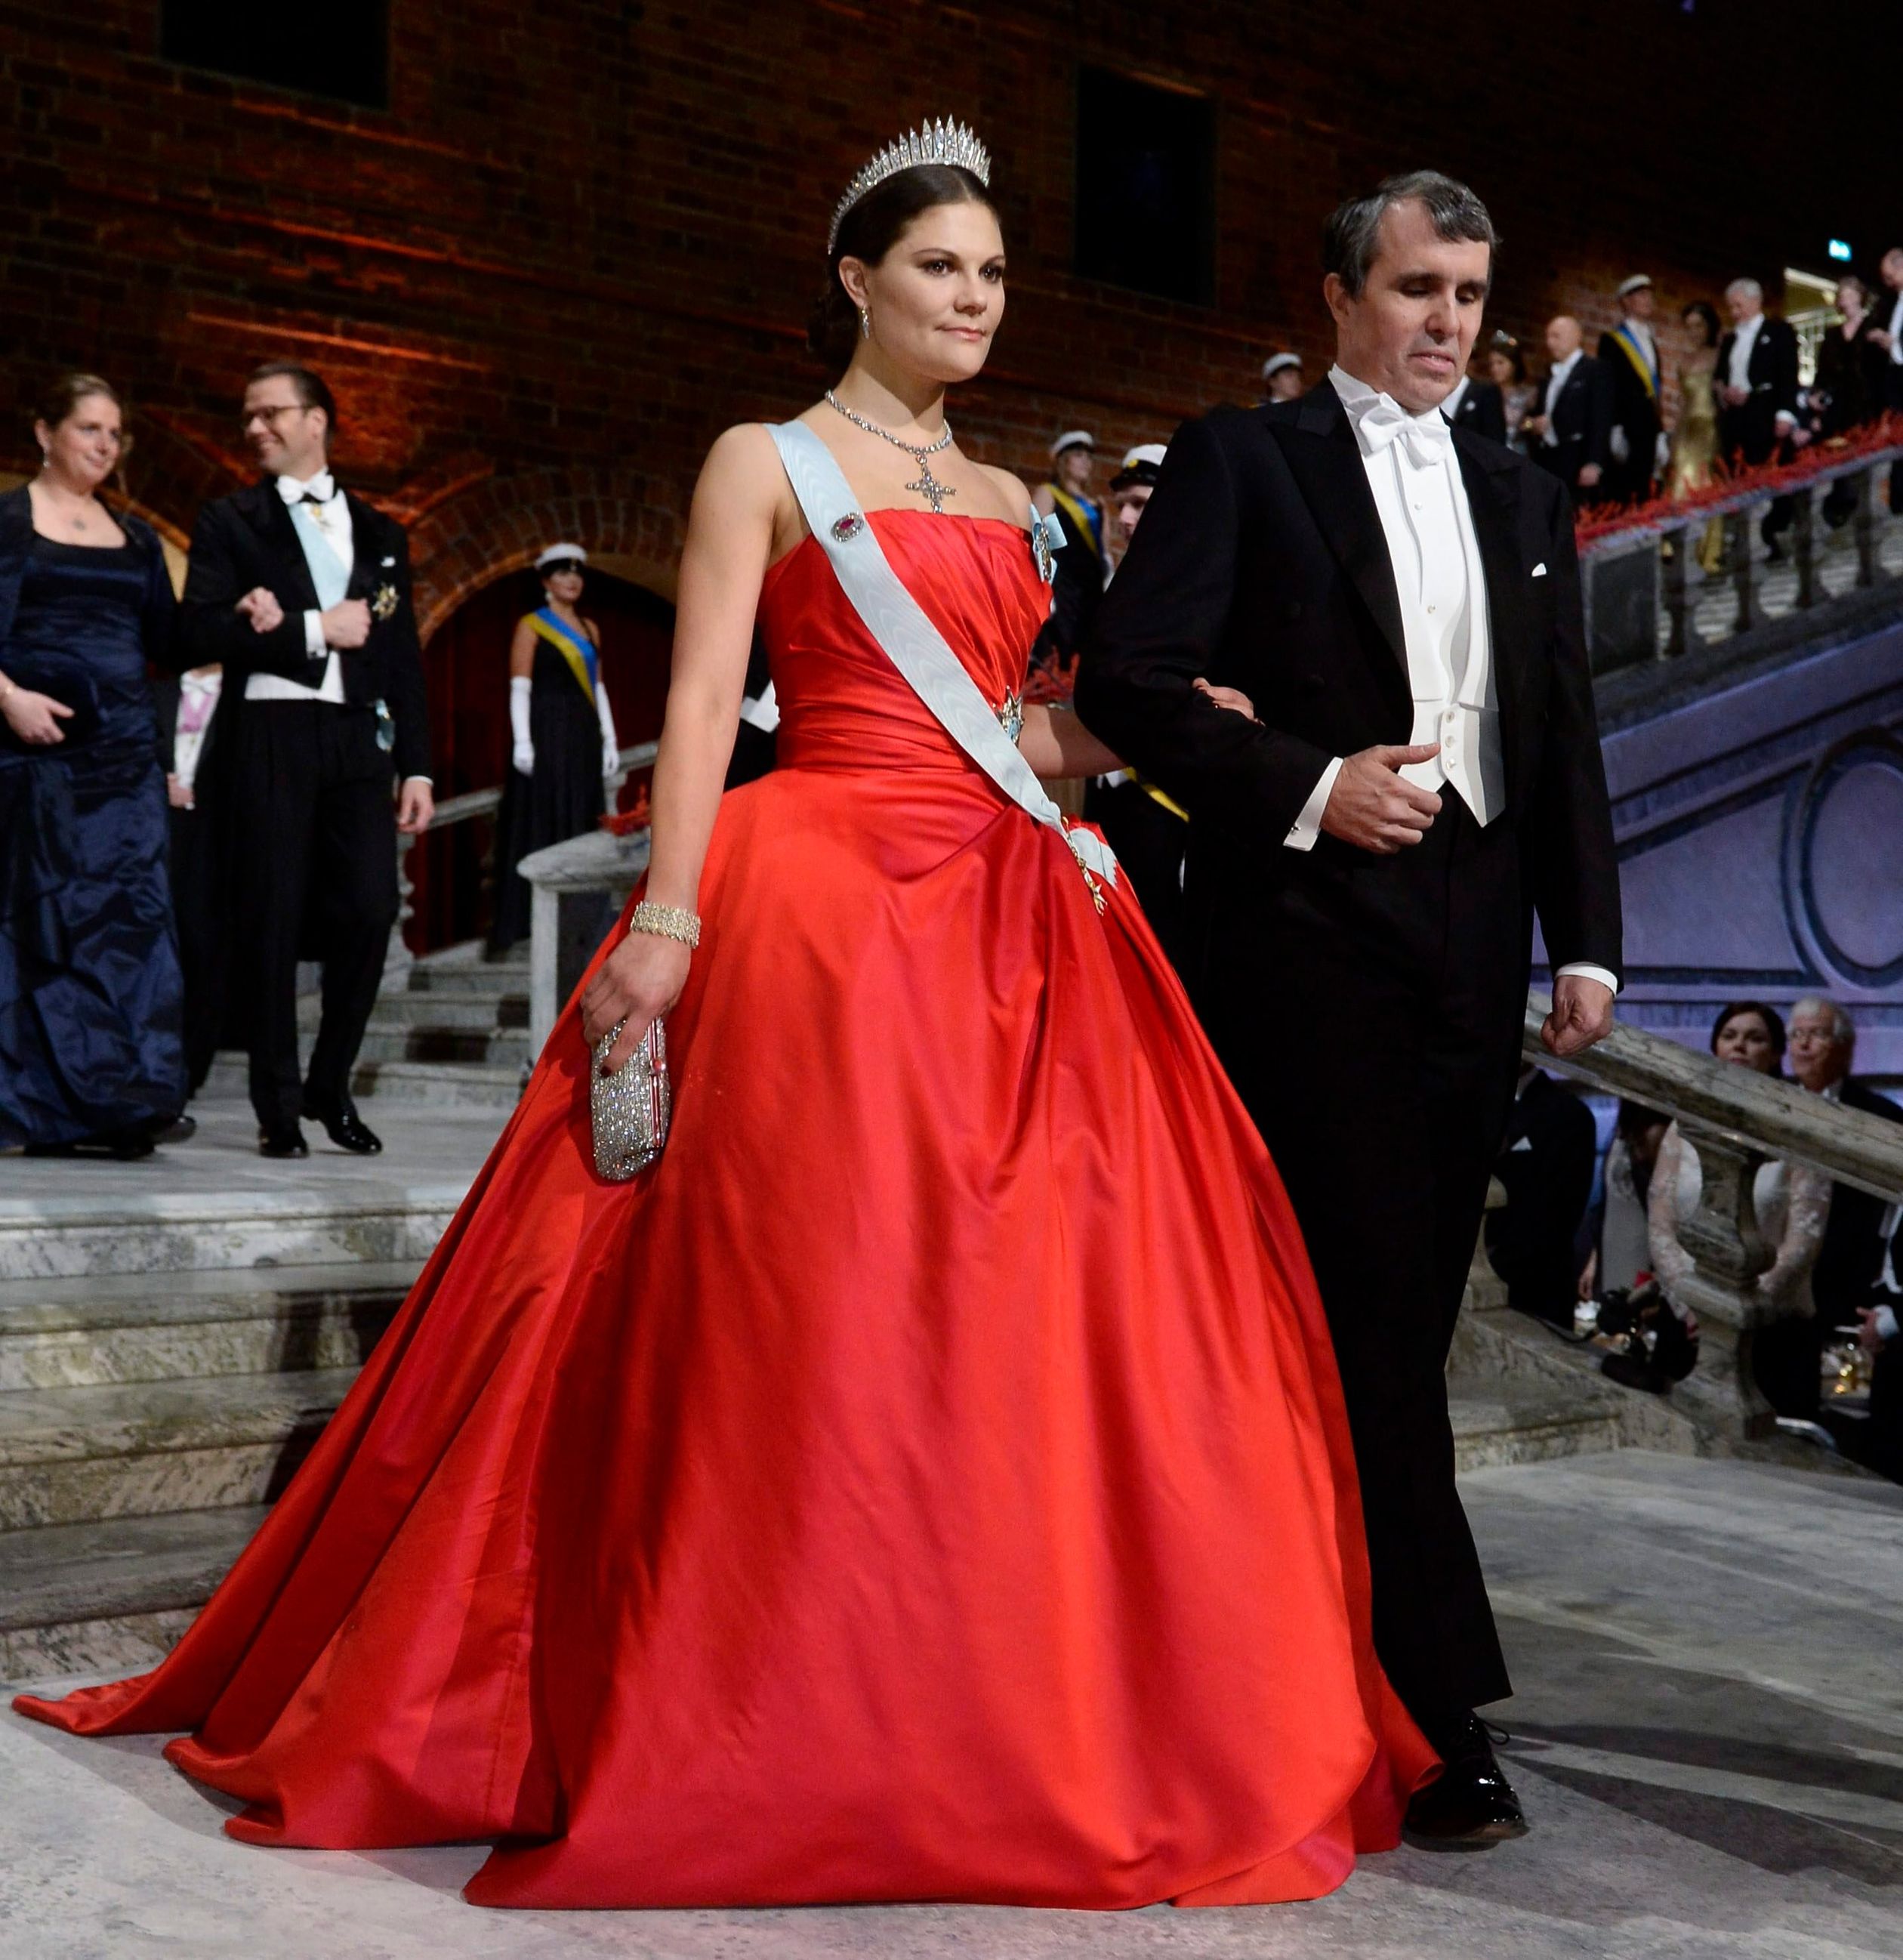 Kroonprinses Victoria van Zweden gaat voor de kleur rood bij de uitreiking van de Nobelprijzen en